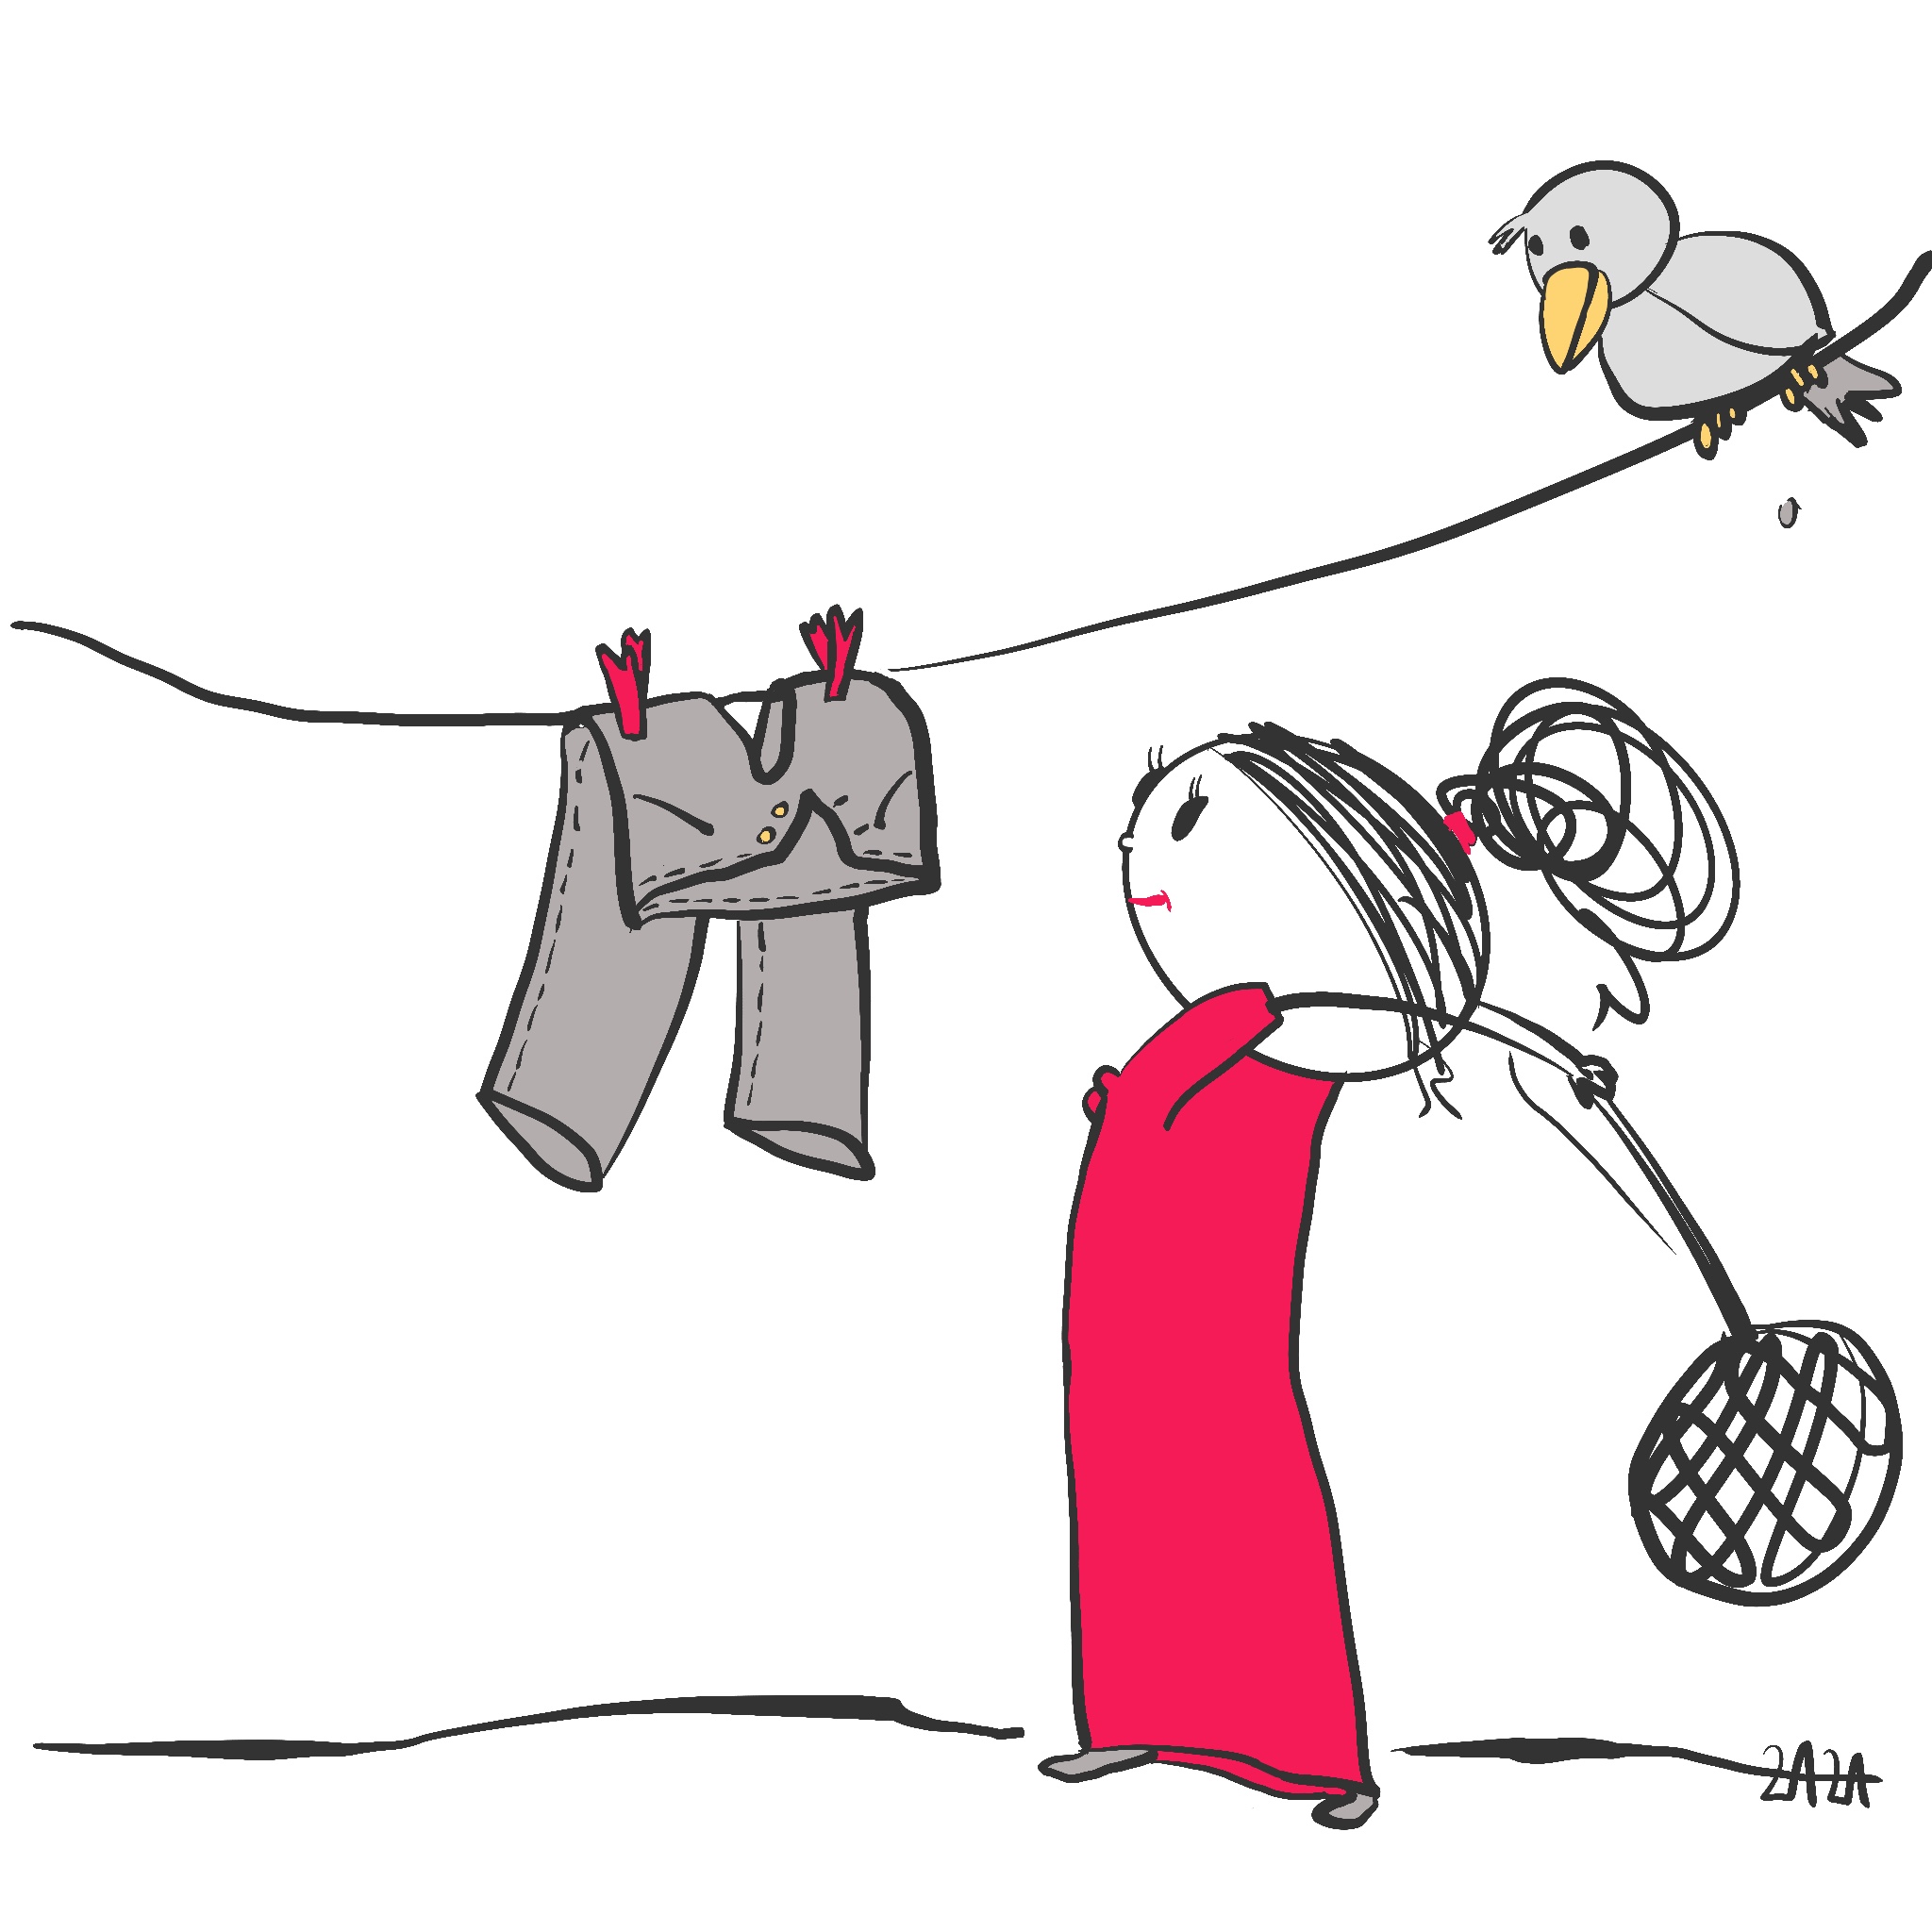 Eine skurrile Strichzeichnung eines Mädchens in einem roten Kleid, das eine Hose an eine Wäscheleine hängt und einen Vogel beobachtet, während es ein Teppichklopfer hinter seinem Rücken hält.